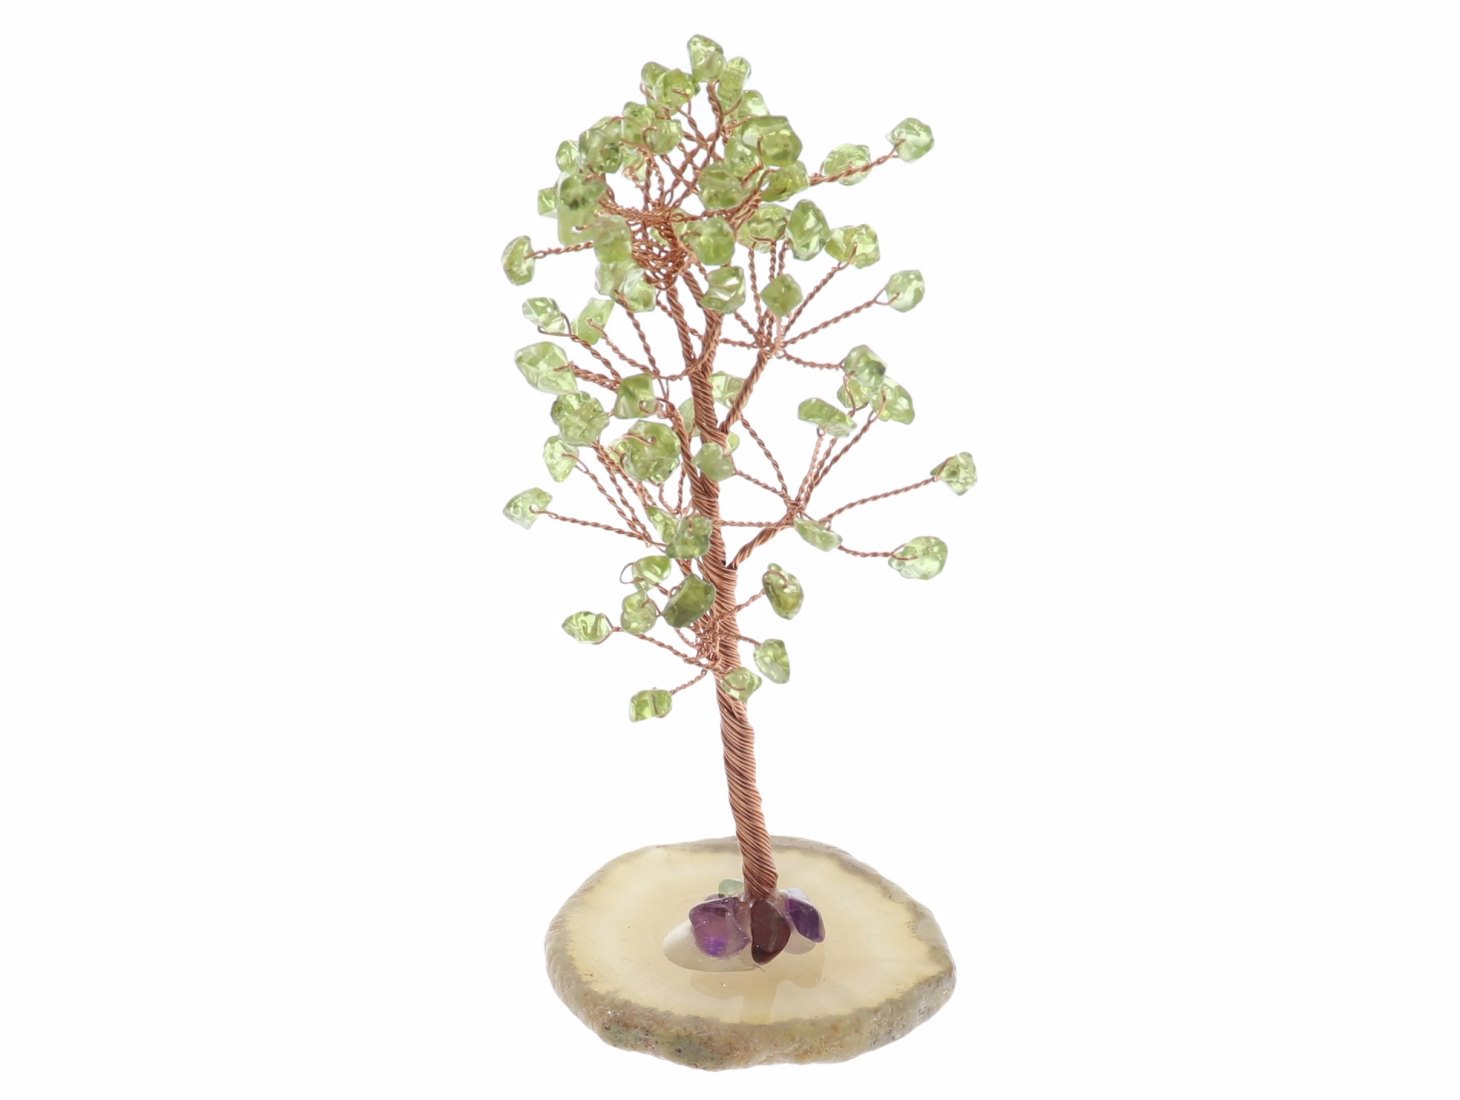 Unikat - Peridot Baum mit Edelstein Splittern und Achat Scheibe Dekoration 41708